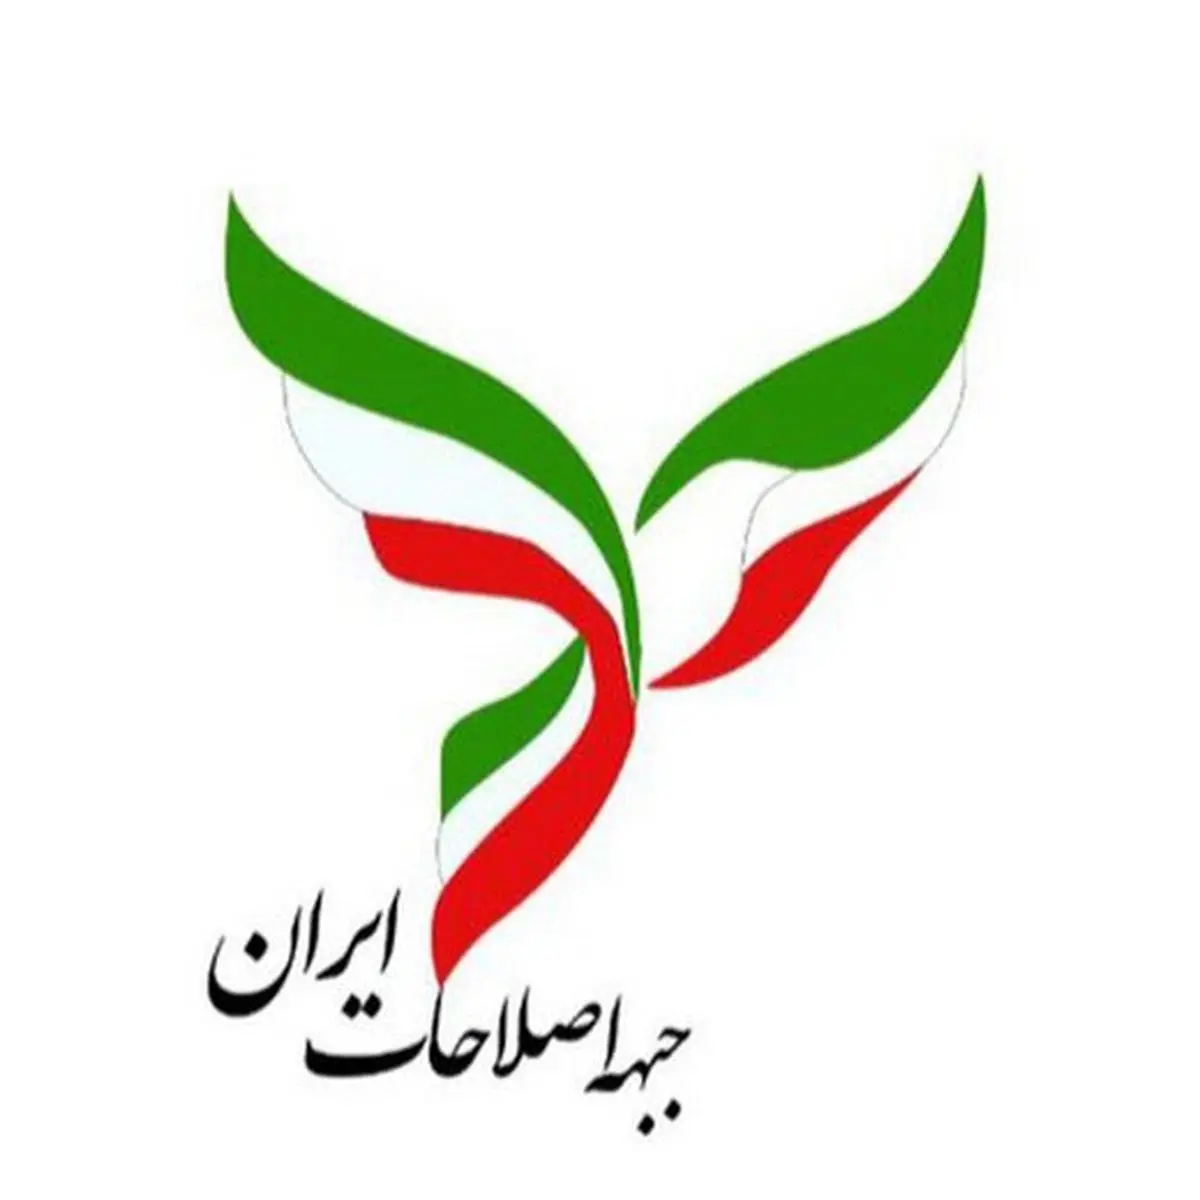 جبهه اصلاحات ایران:قرنطینه فوری و سراسری اعلام کنید